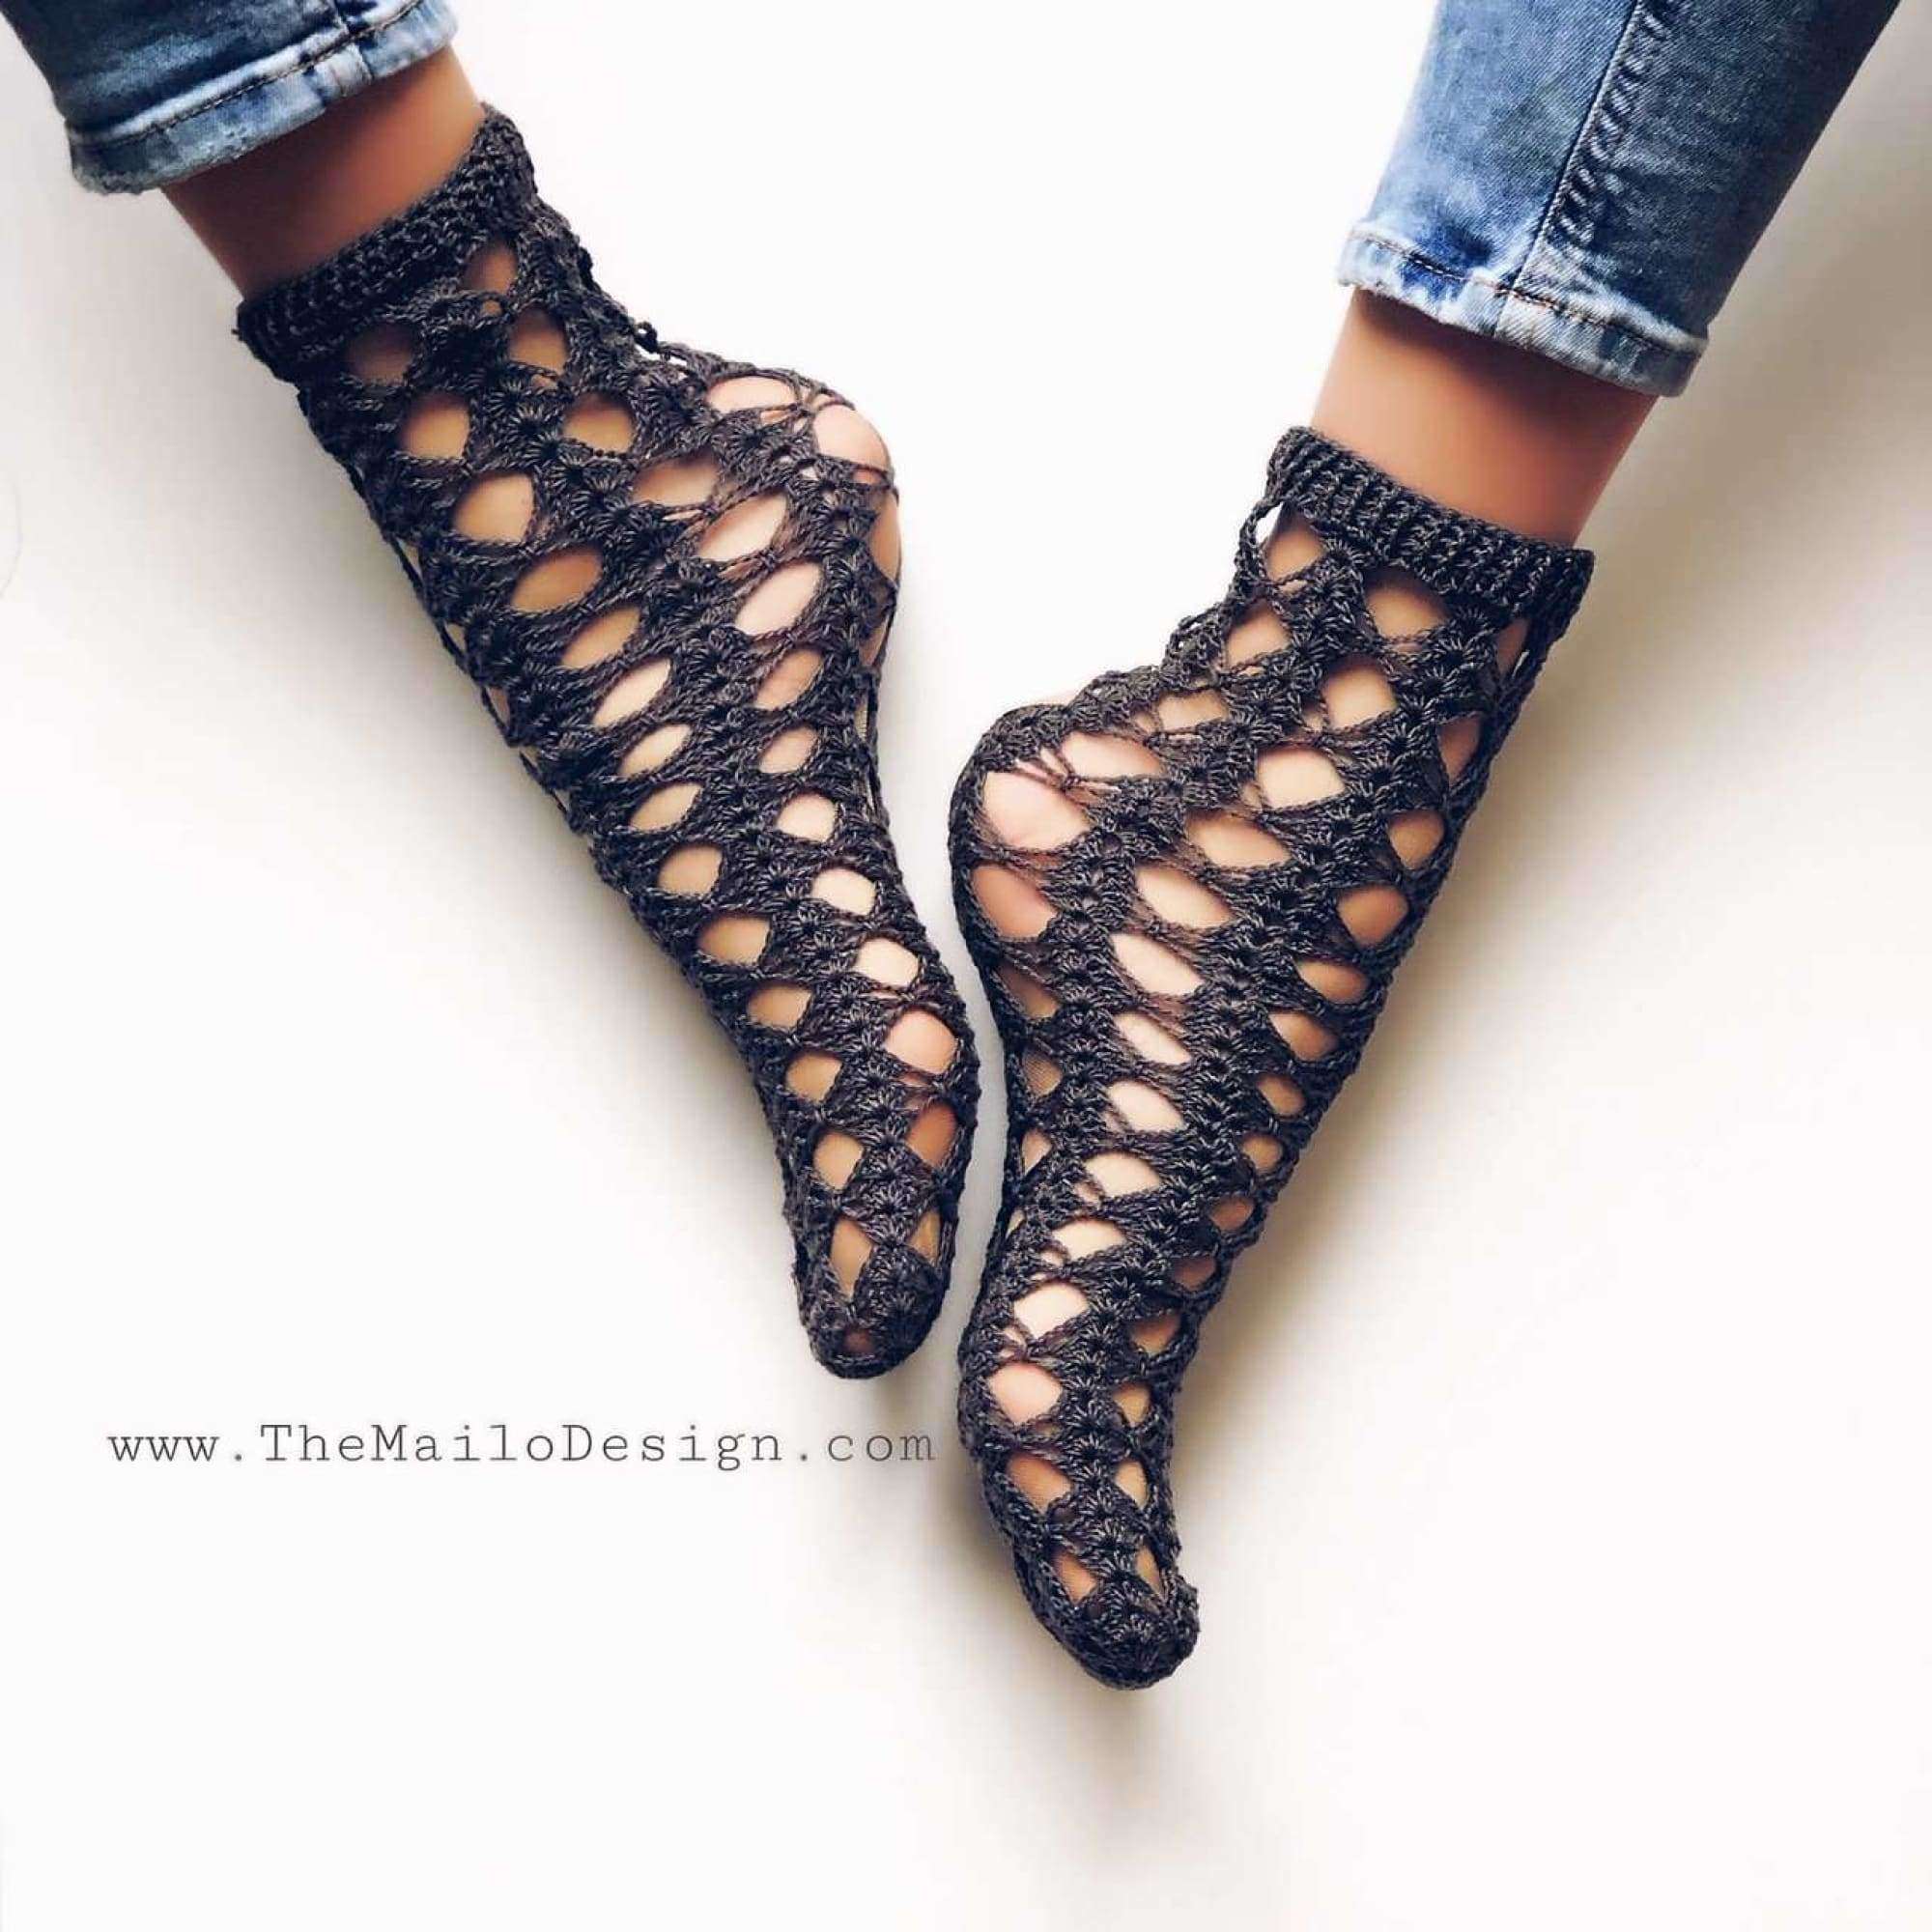 Knitido Toe Socks Crochet Look Lace Black Nepal